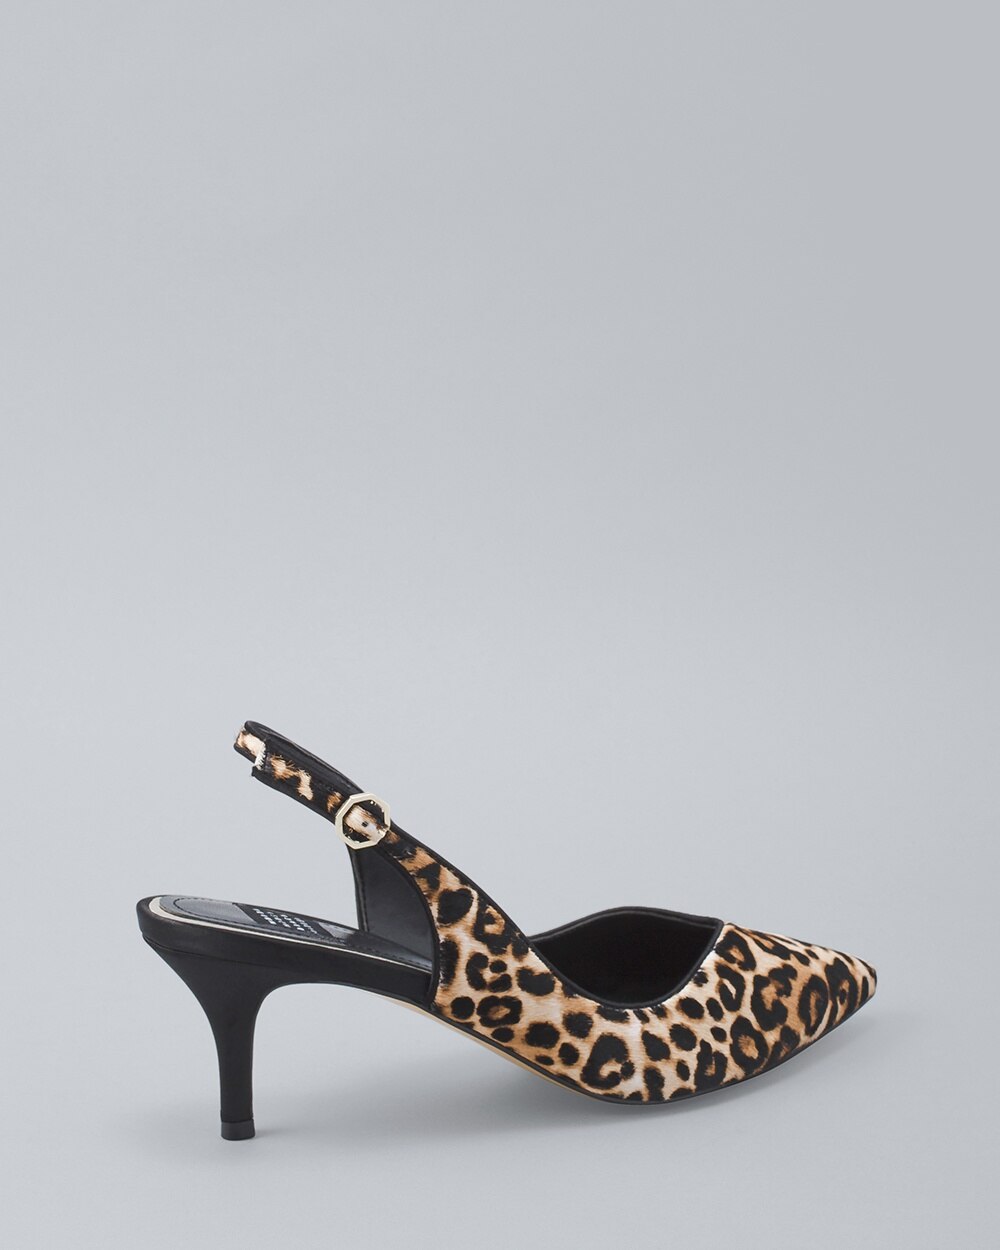 white house black market leopard shoes